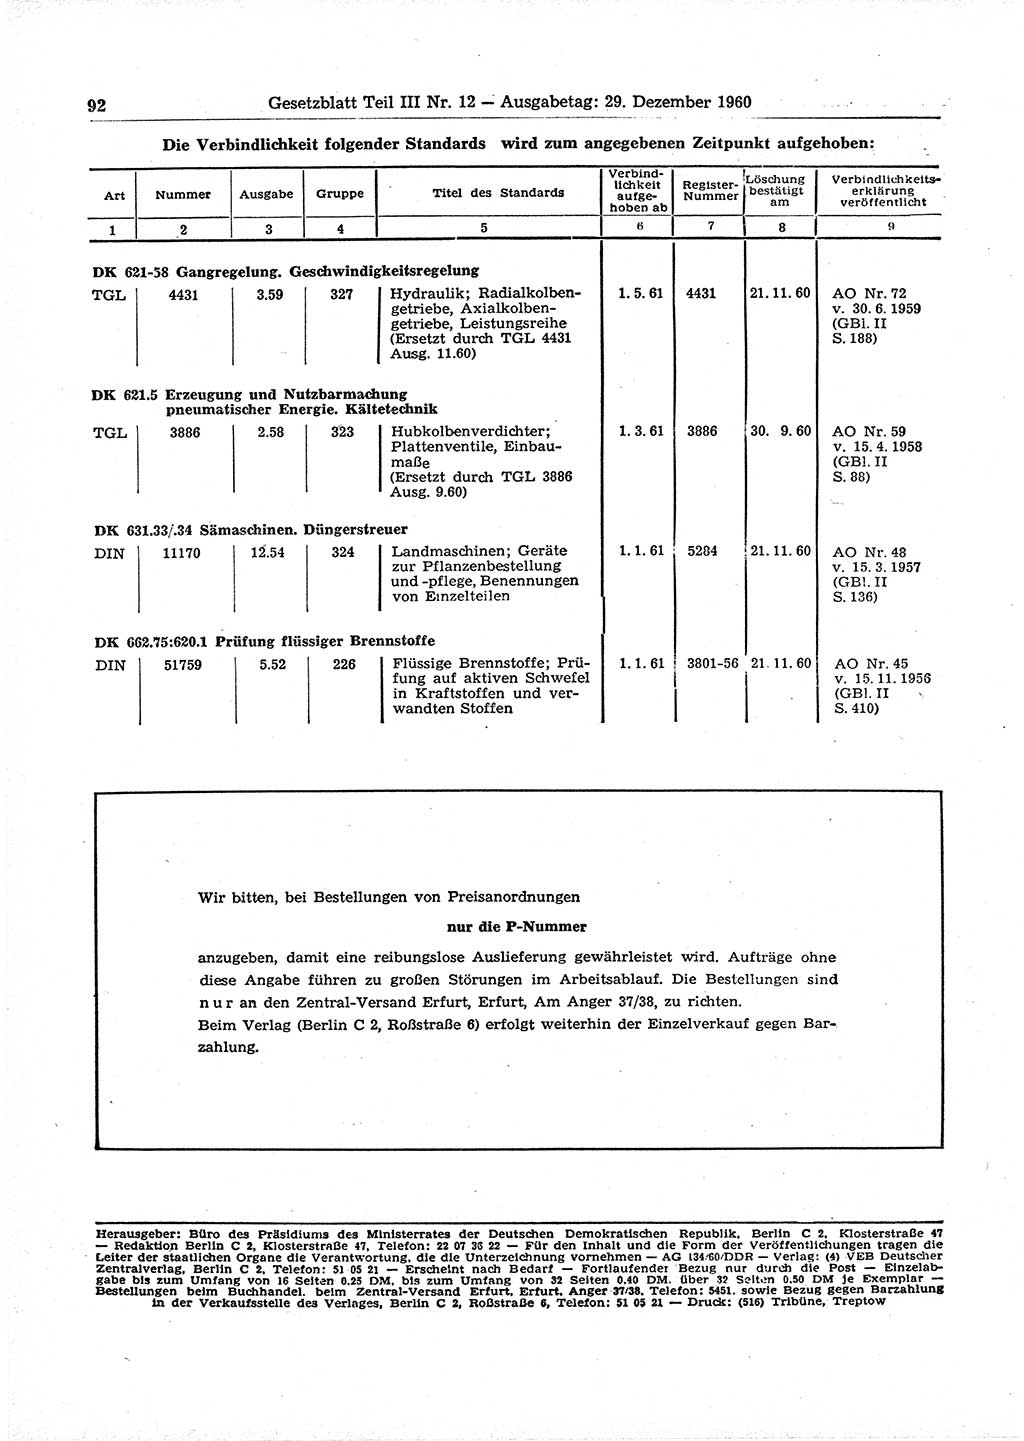 Gesetzblatt (GBl.) der Deutschen Demokratischen Republik (DDR) Teil ⅠⅠⅠ 1960, Seite 92 (GBl. DDR ⅠⅠⅠ 1960, S. 92)